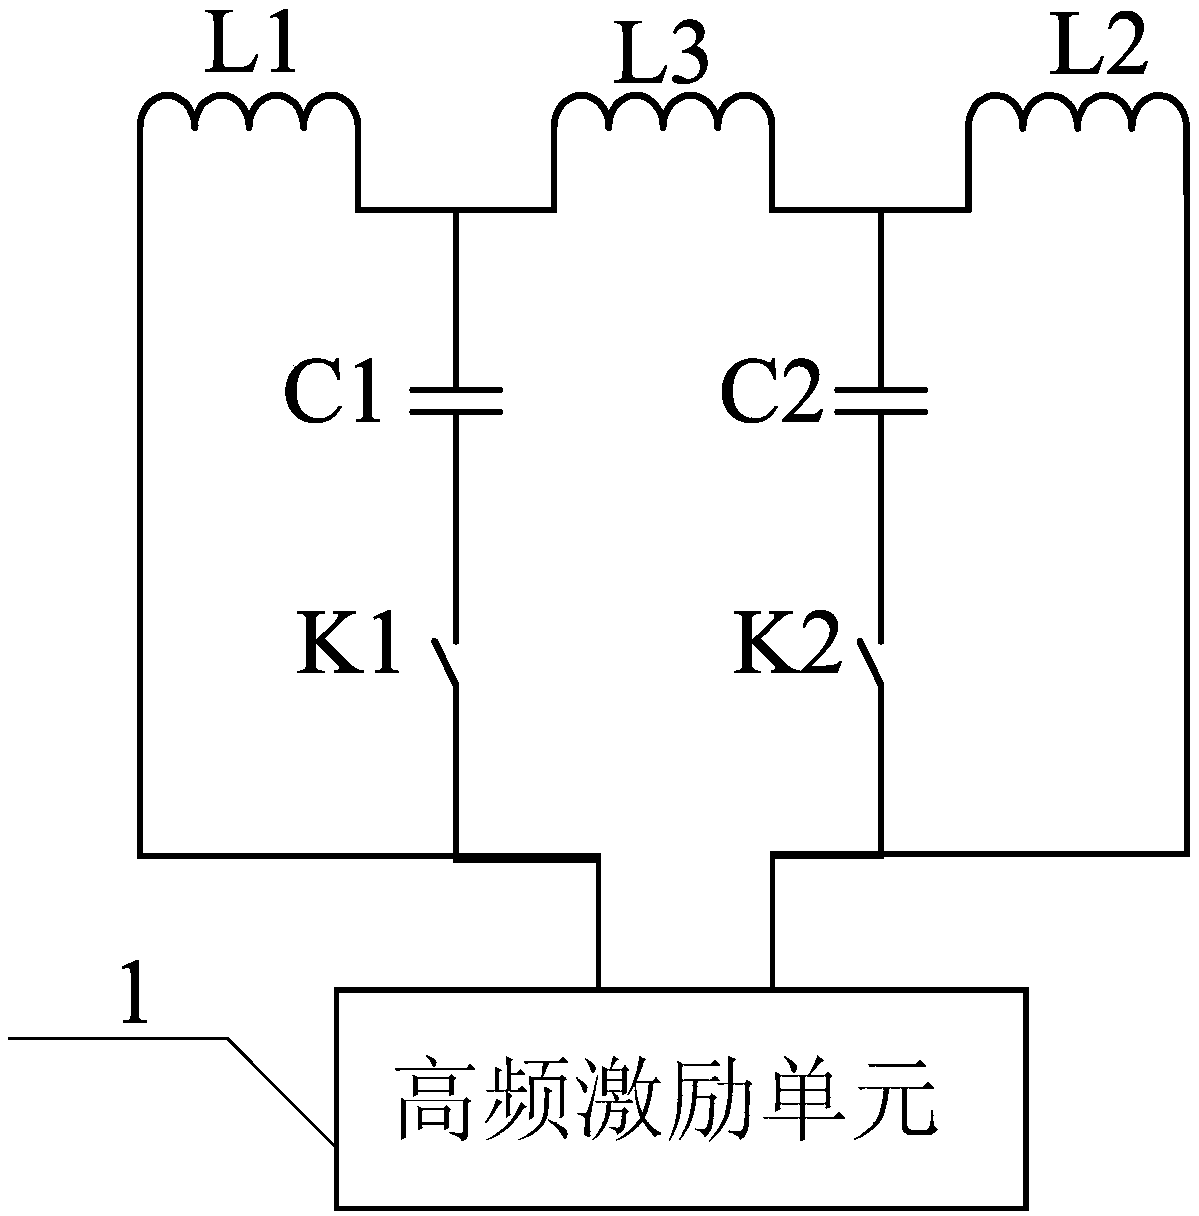 π-type lcl structure based on array coil wireless energy transmission and its working method